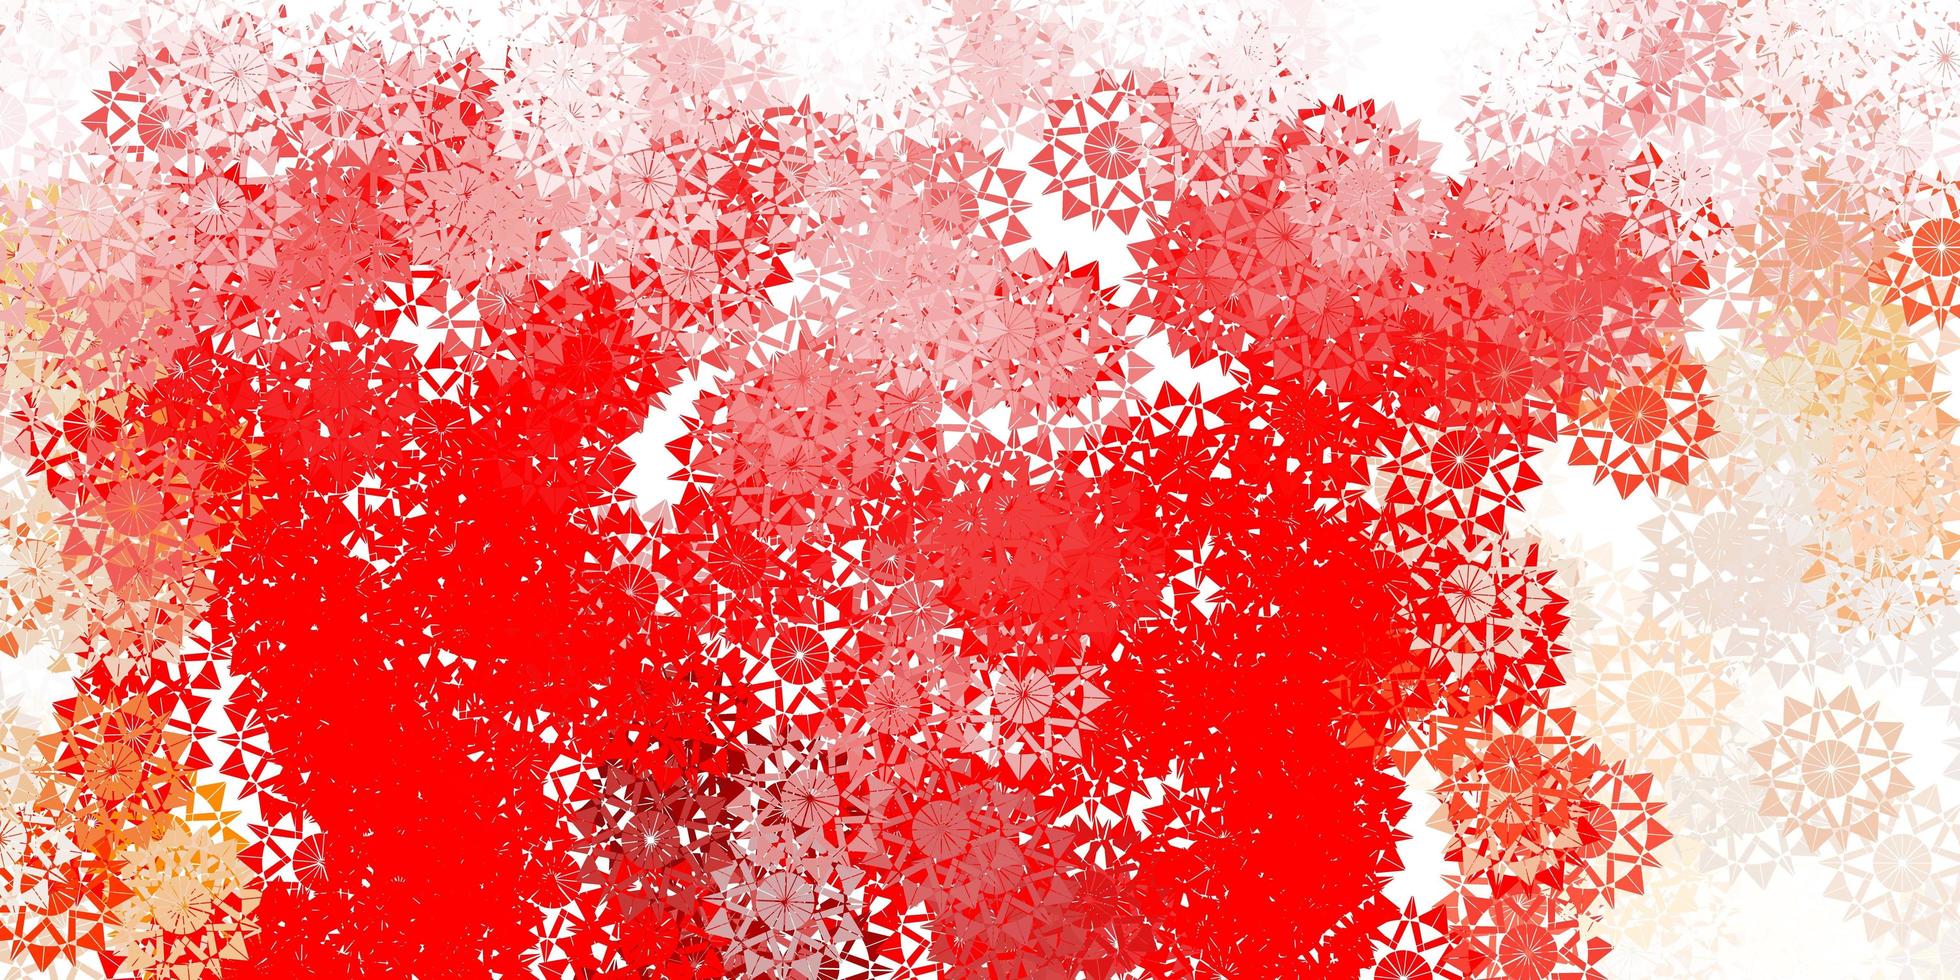 sfondo vettoriale rosso chiaro con fiocchi di neve di Natale.